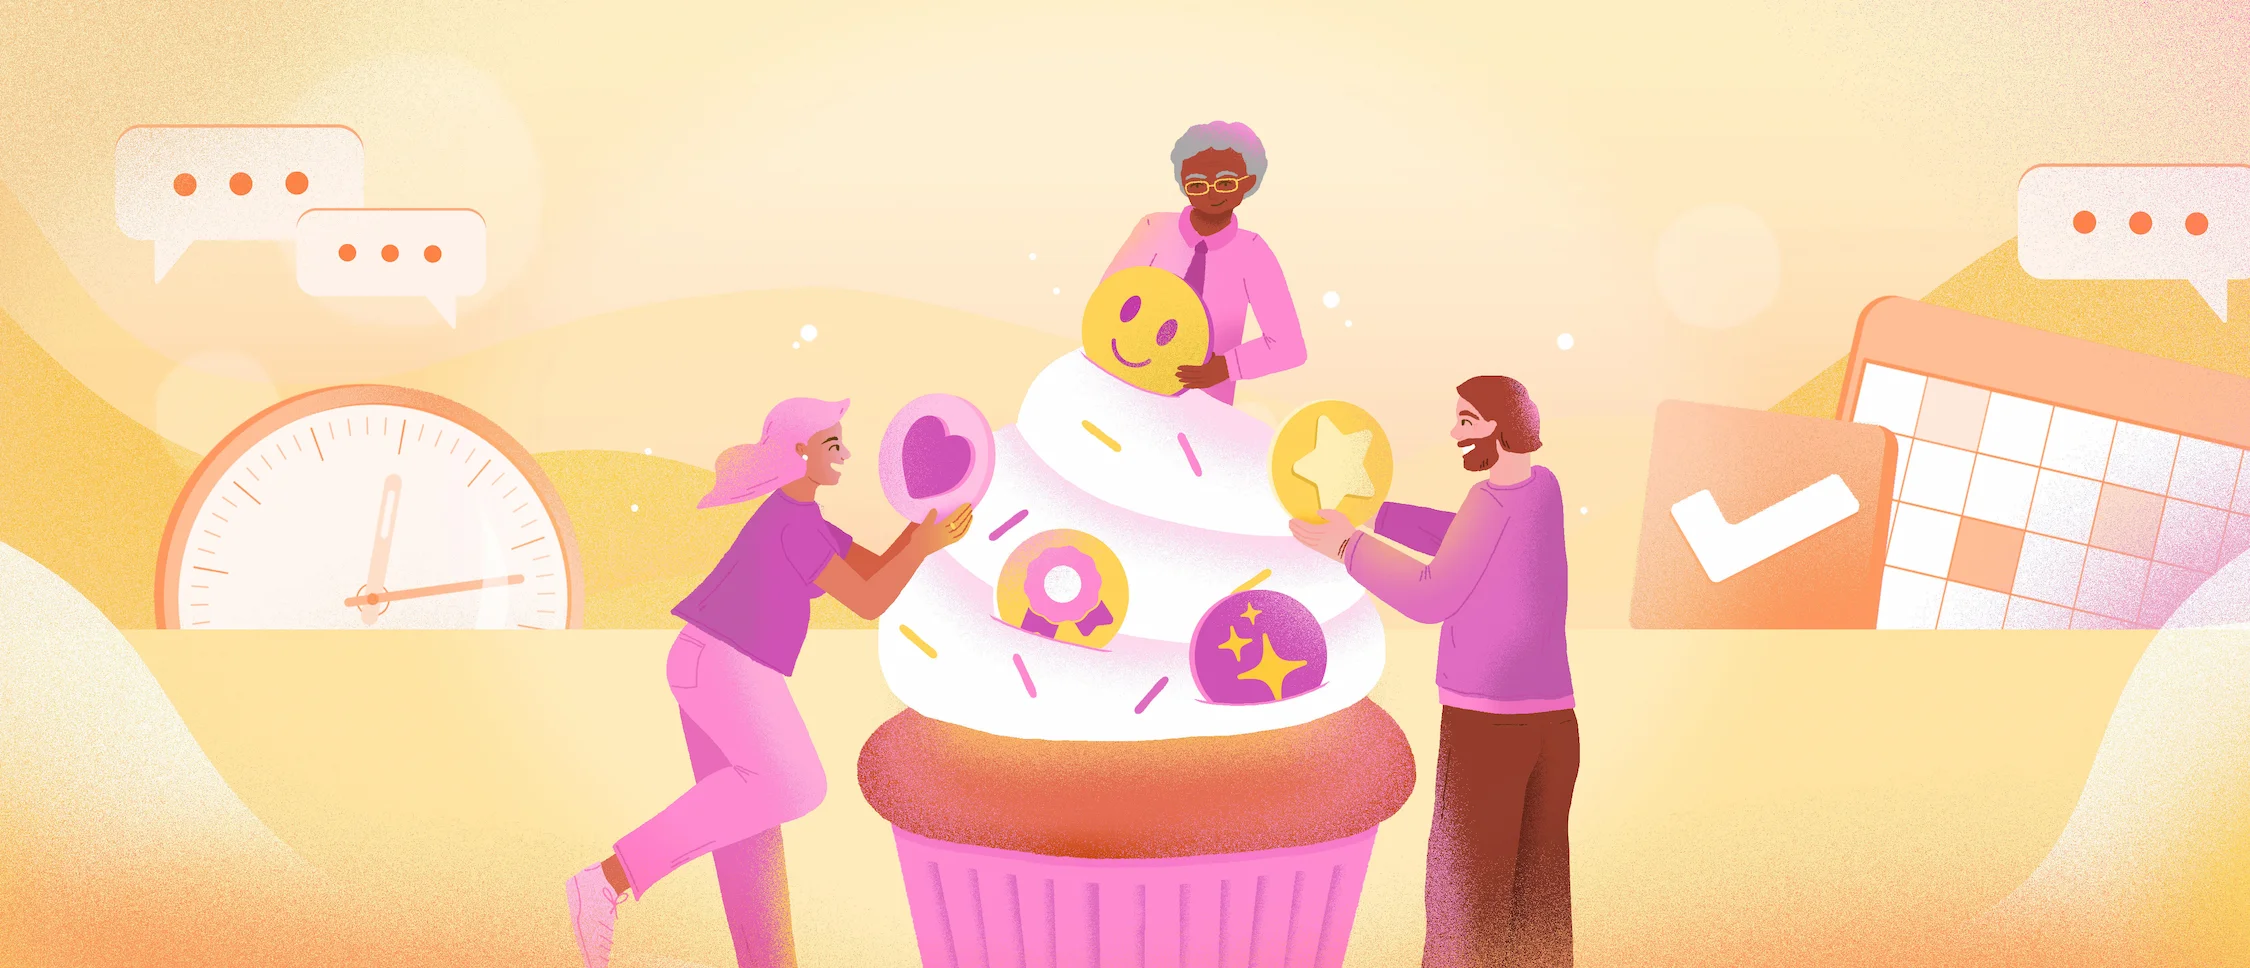 Trois personnes qui garnissent le glaçage d'un cupcake avec un smiley, une étoile, un coeur et d'autres éléments